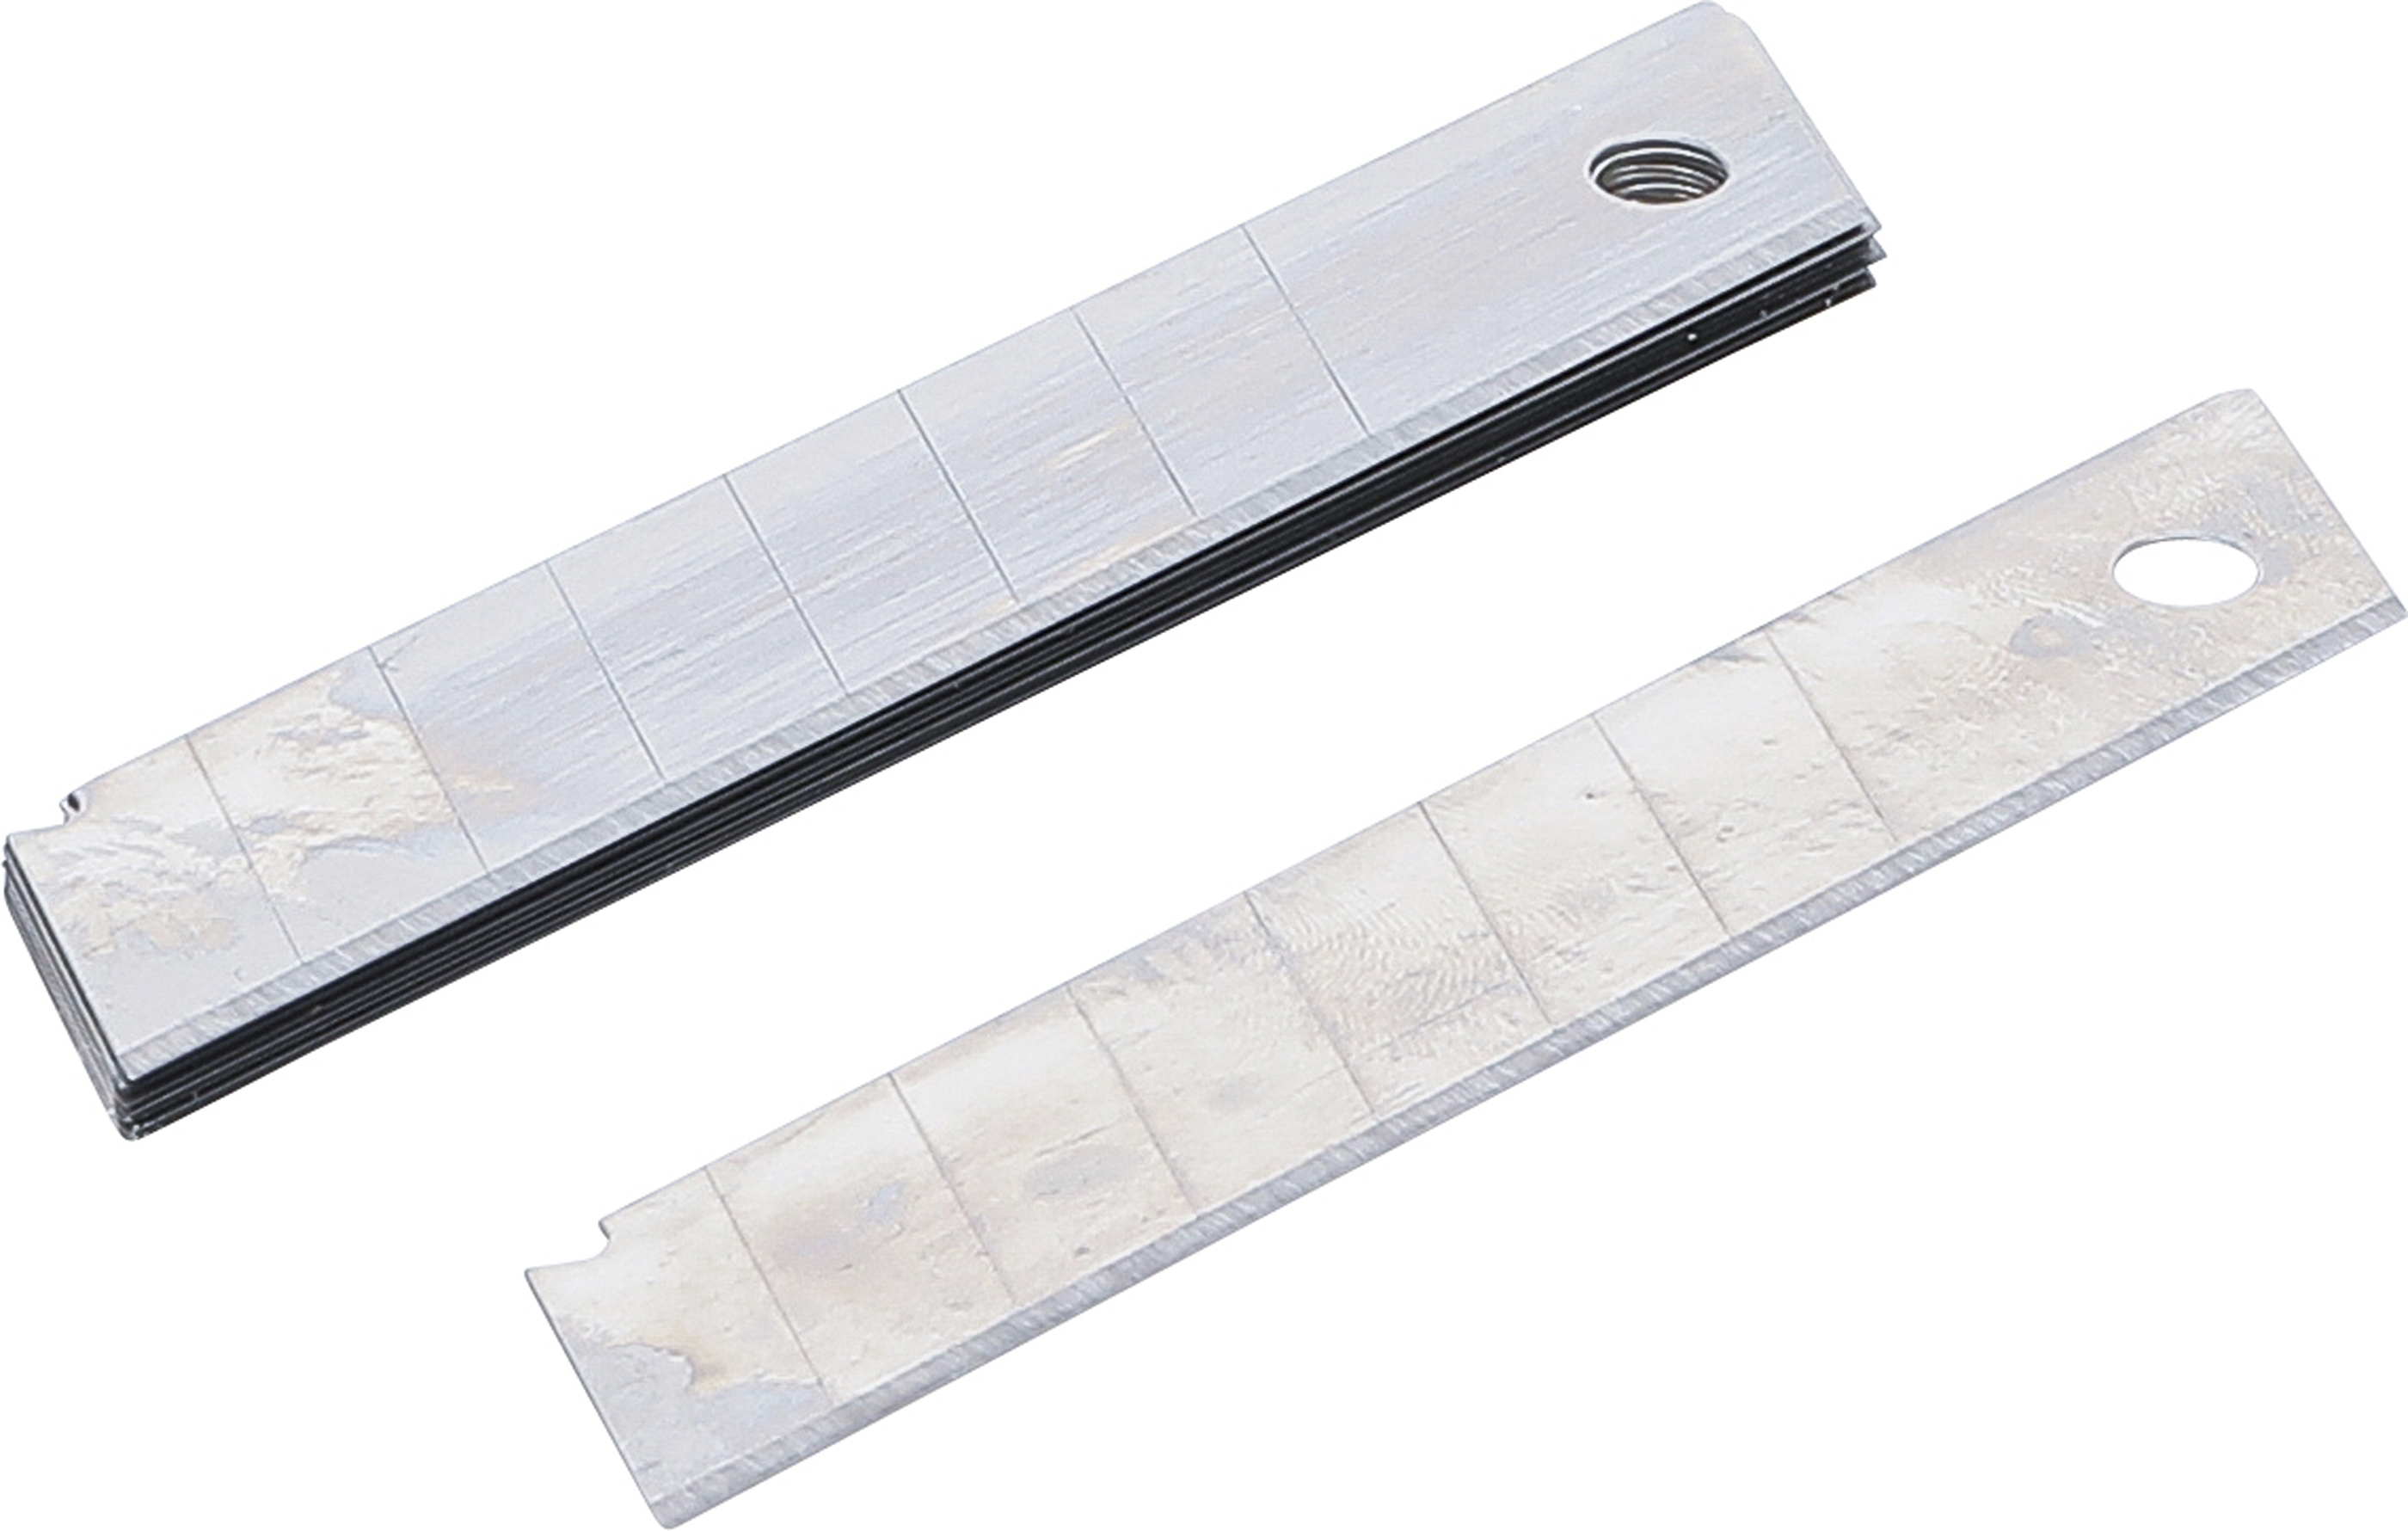 Klingen für Cuttermesser | 18 mm | 10-tlg. - BGS 50628